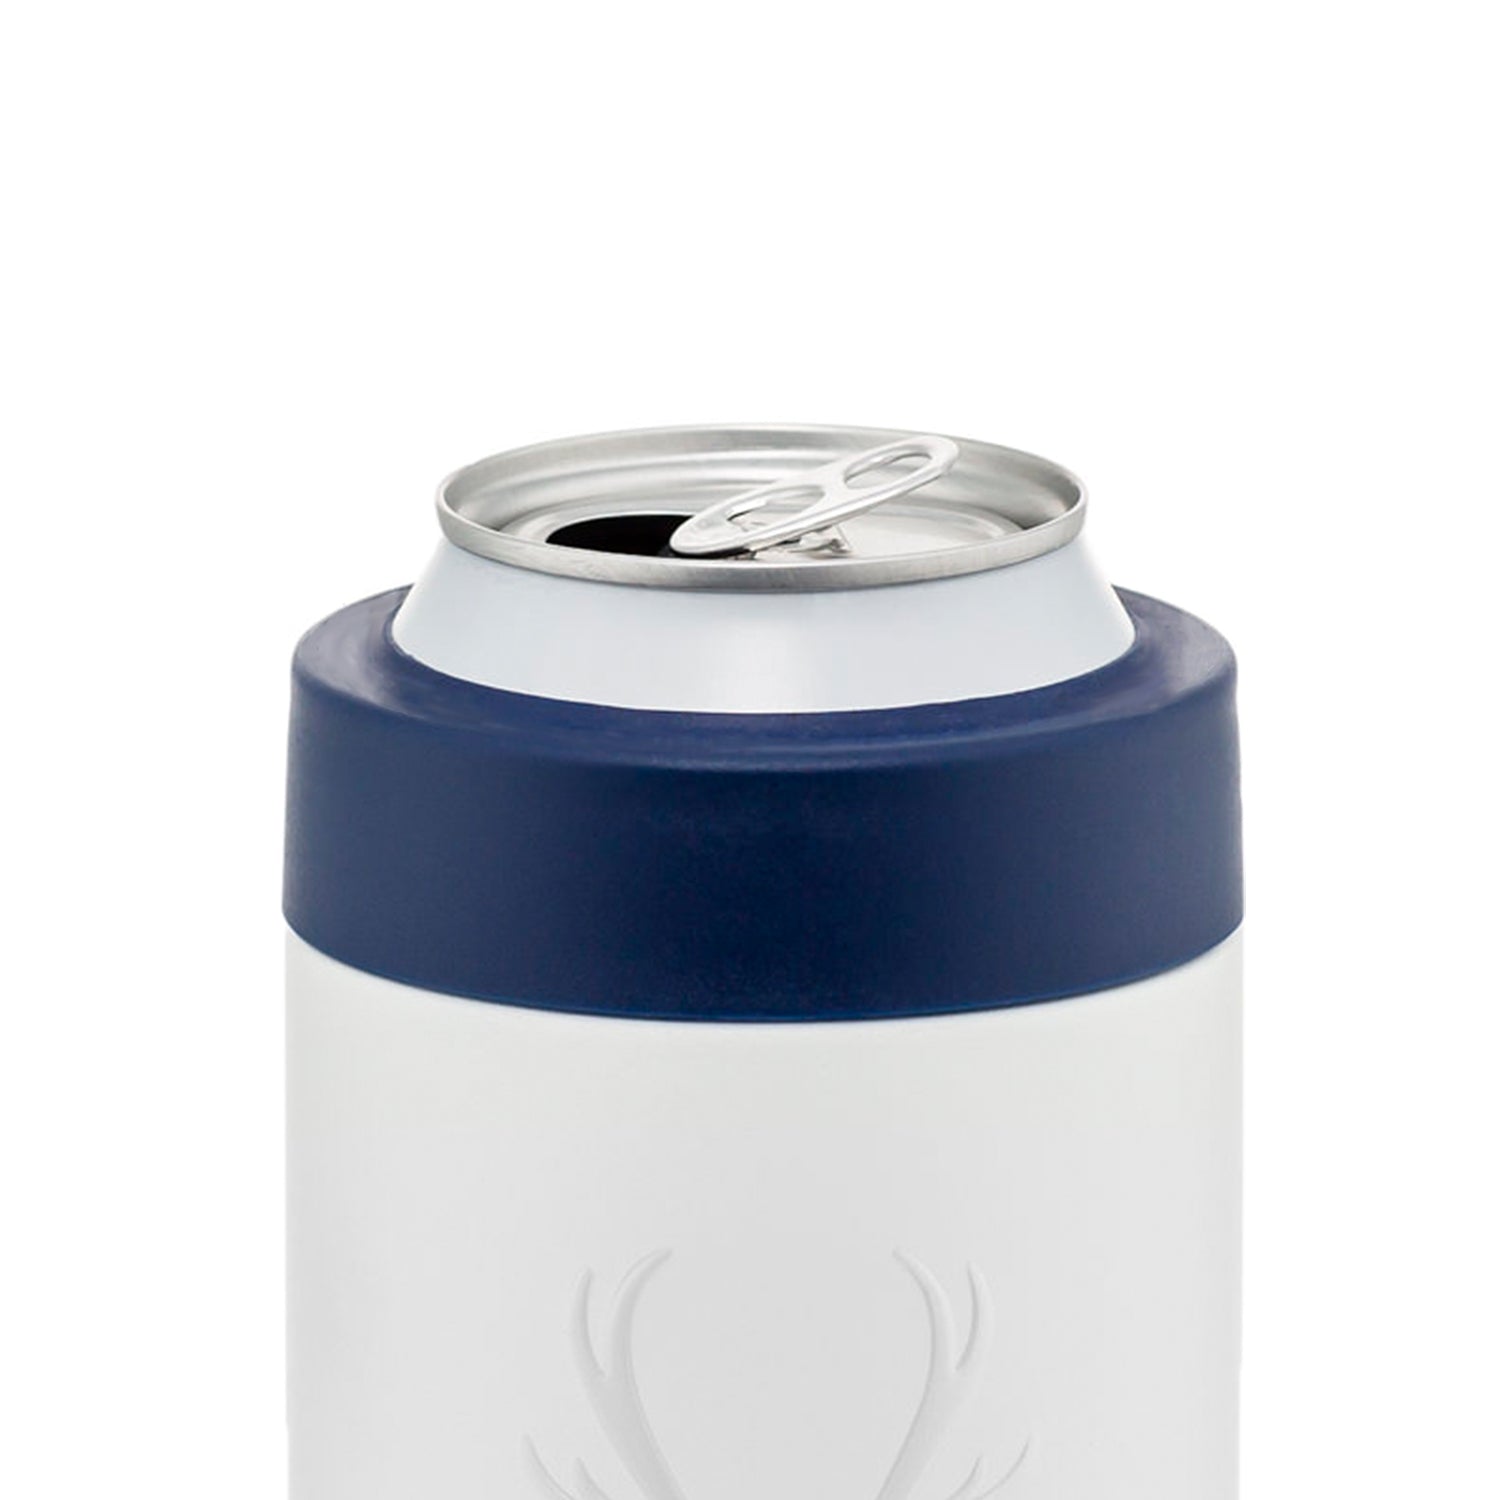 Koozie® Bottle Cooler with Removable Bottle Opener